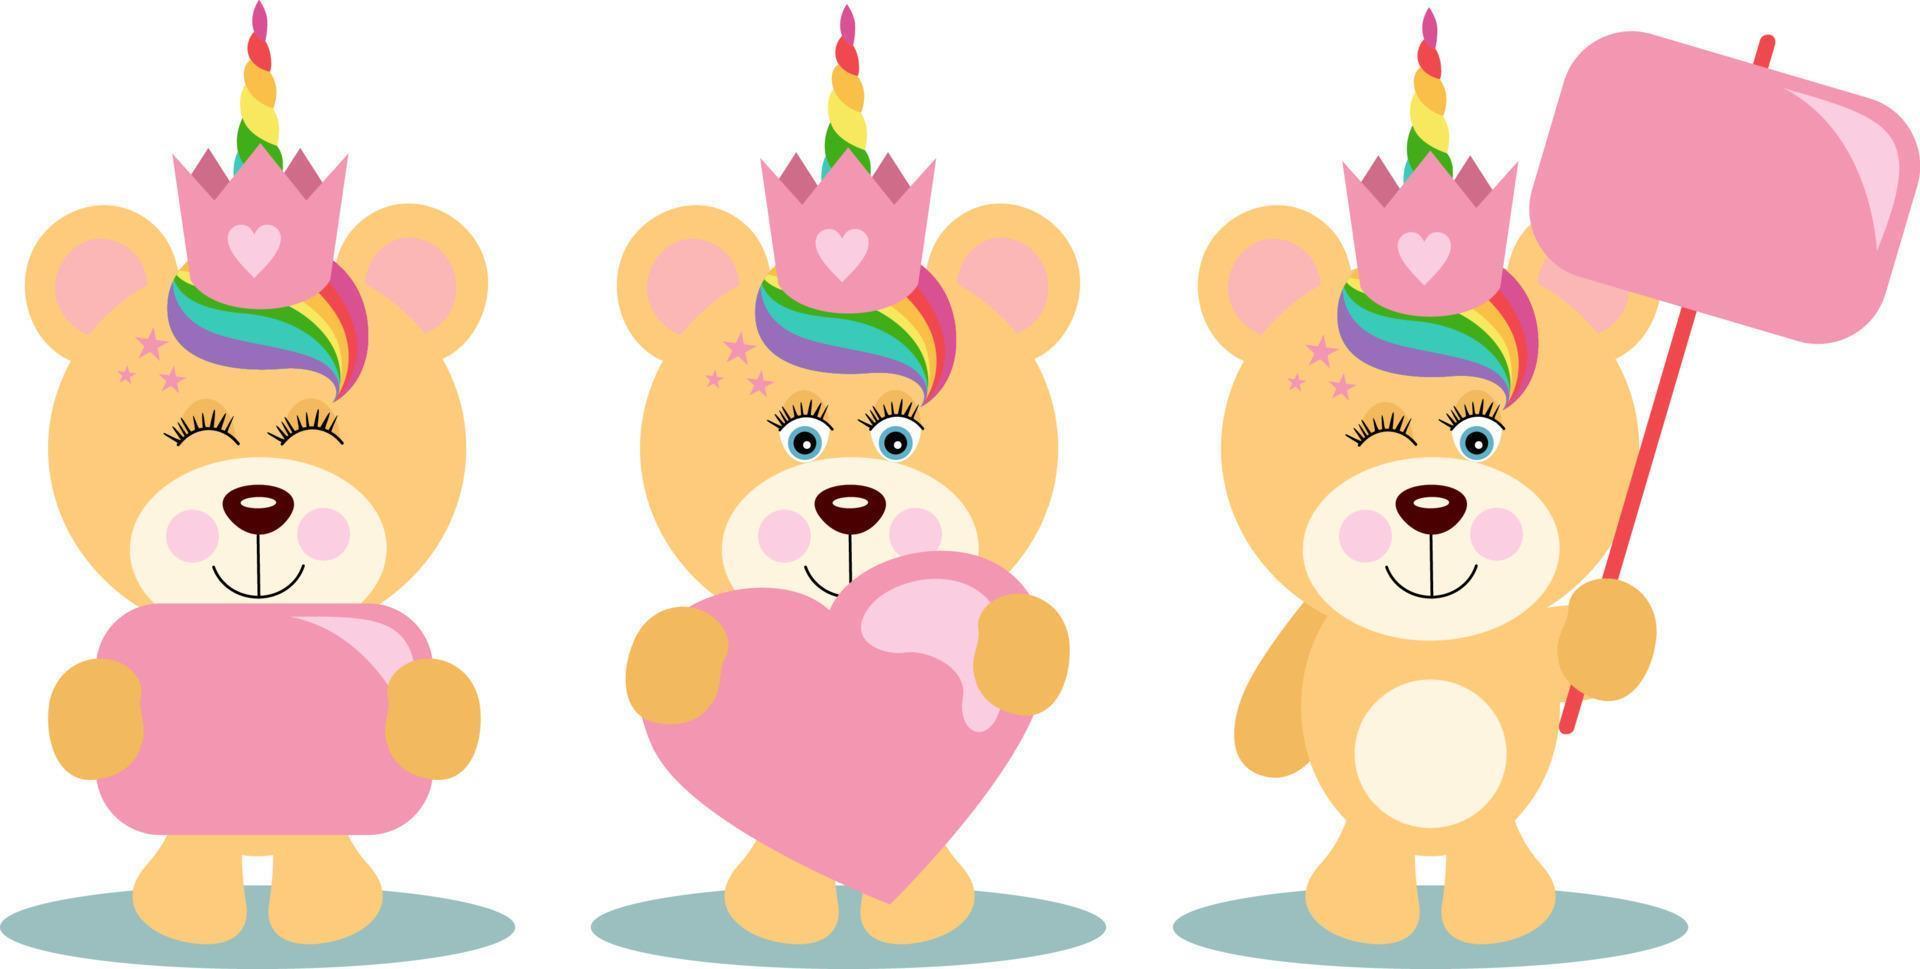 Drei niedliche Einhorn-Teddybären, die ein rosafarbenes Schild und ein Herz halten vektor